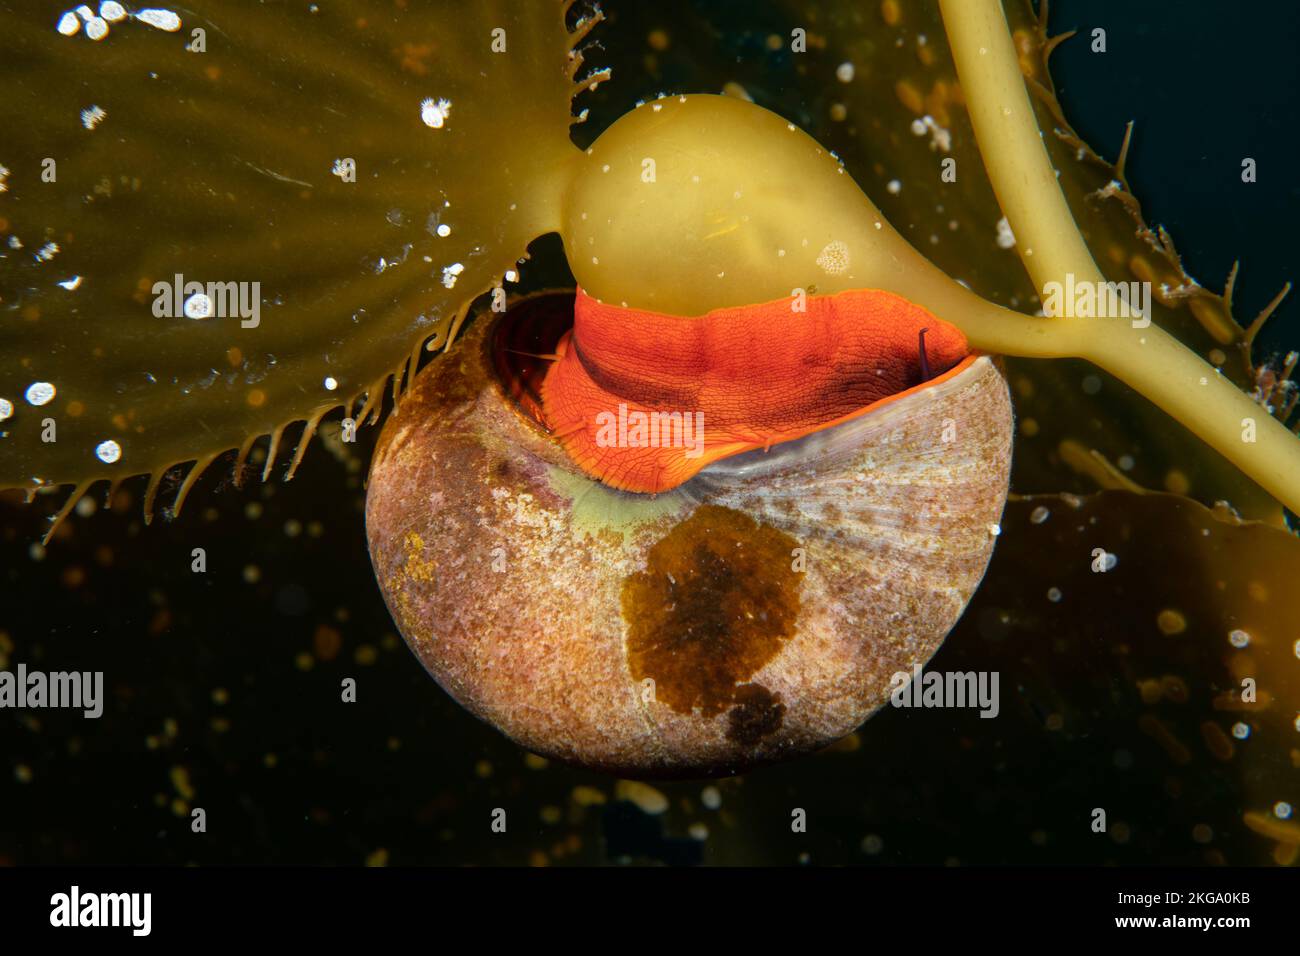 Una lumaca di cima di norris, o lumaca di kelp, vive fra i letti di kelp in Califiornia, alimentando ed usando le alghe per protezione dai predatori. Foto Stock